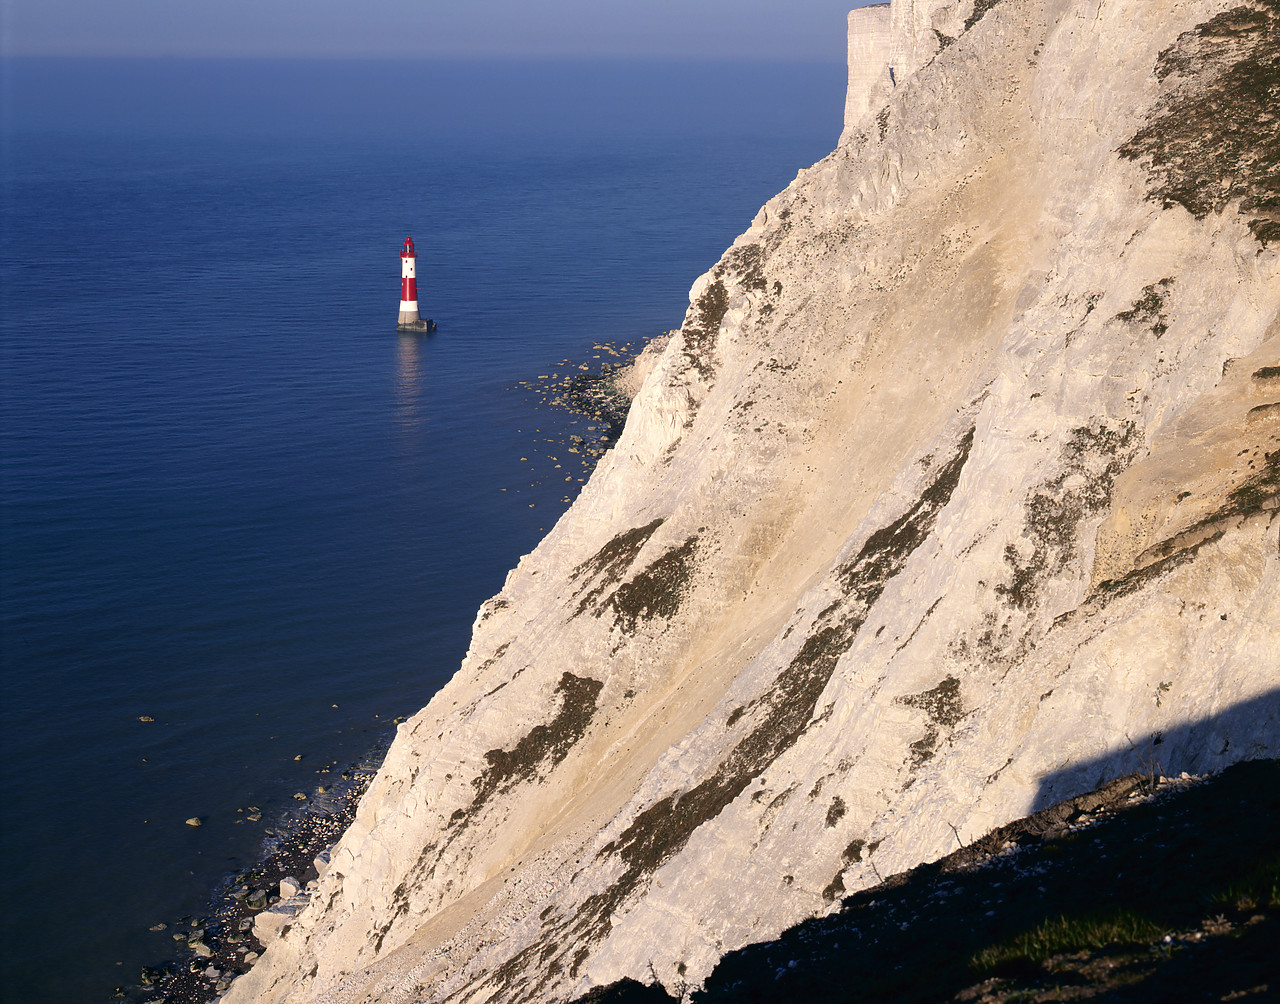 #955972-1 - Beachy Head Lighthouse, East Sussex, England